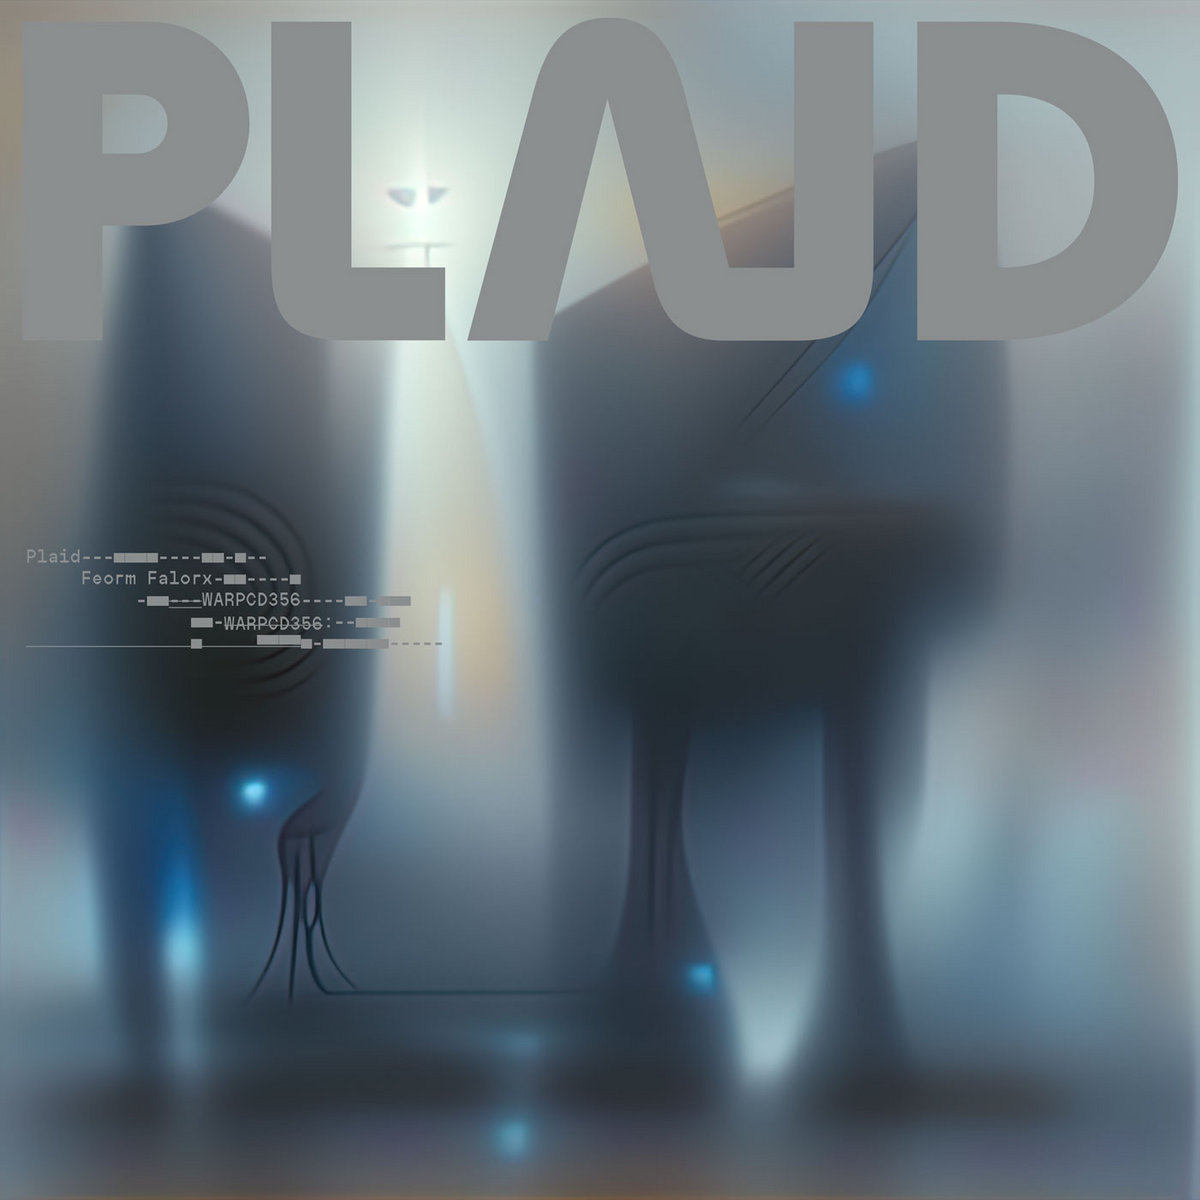 Plaid – Feorm Falorx [Hi-RES]